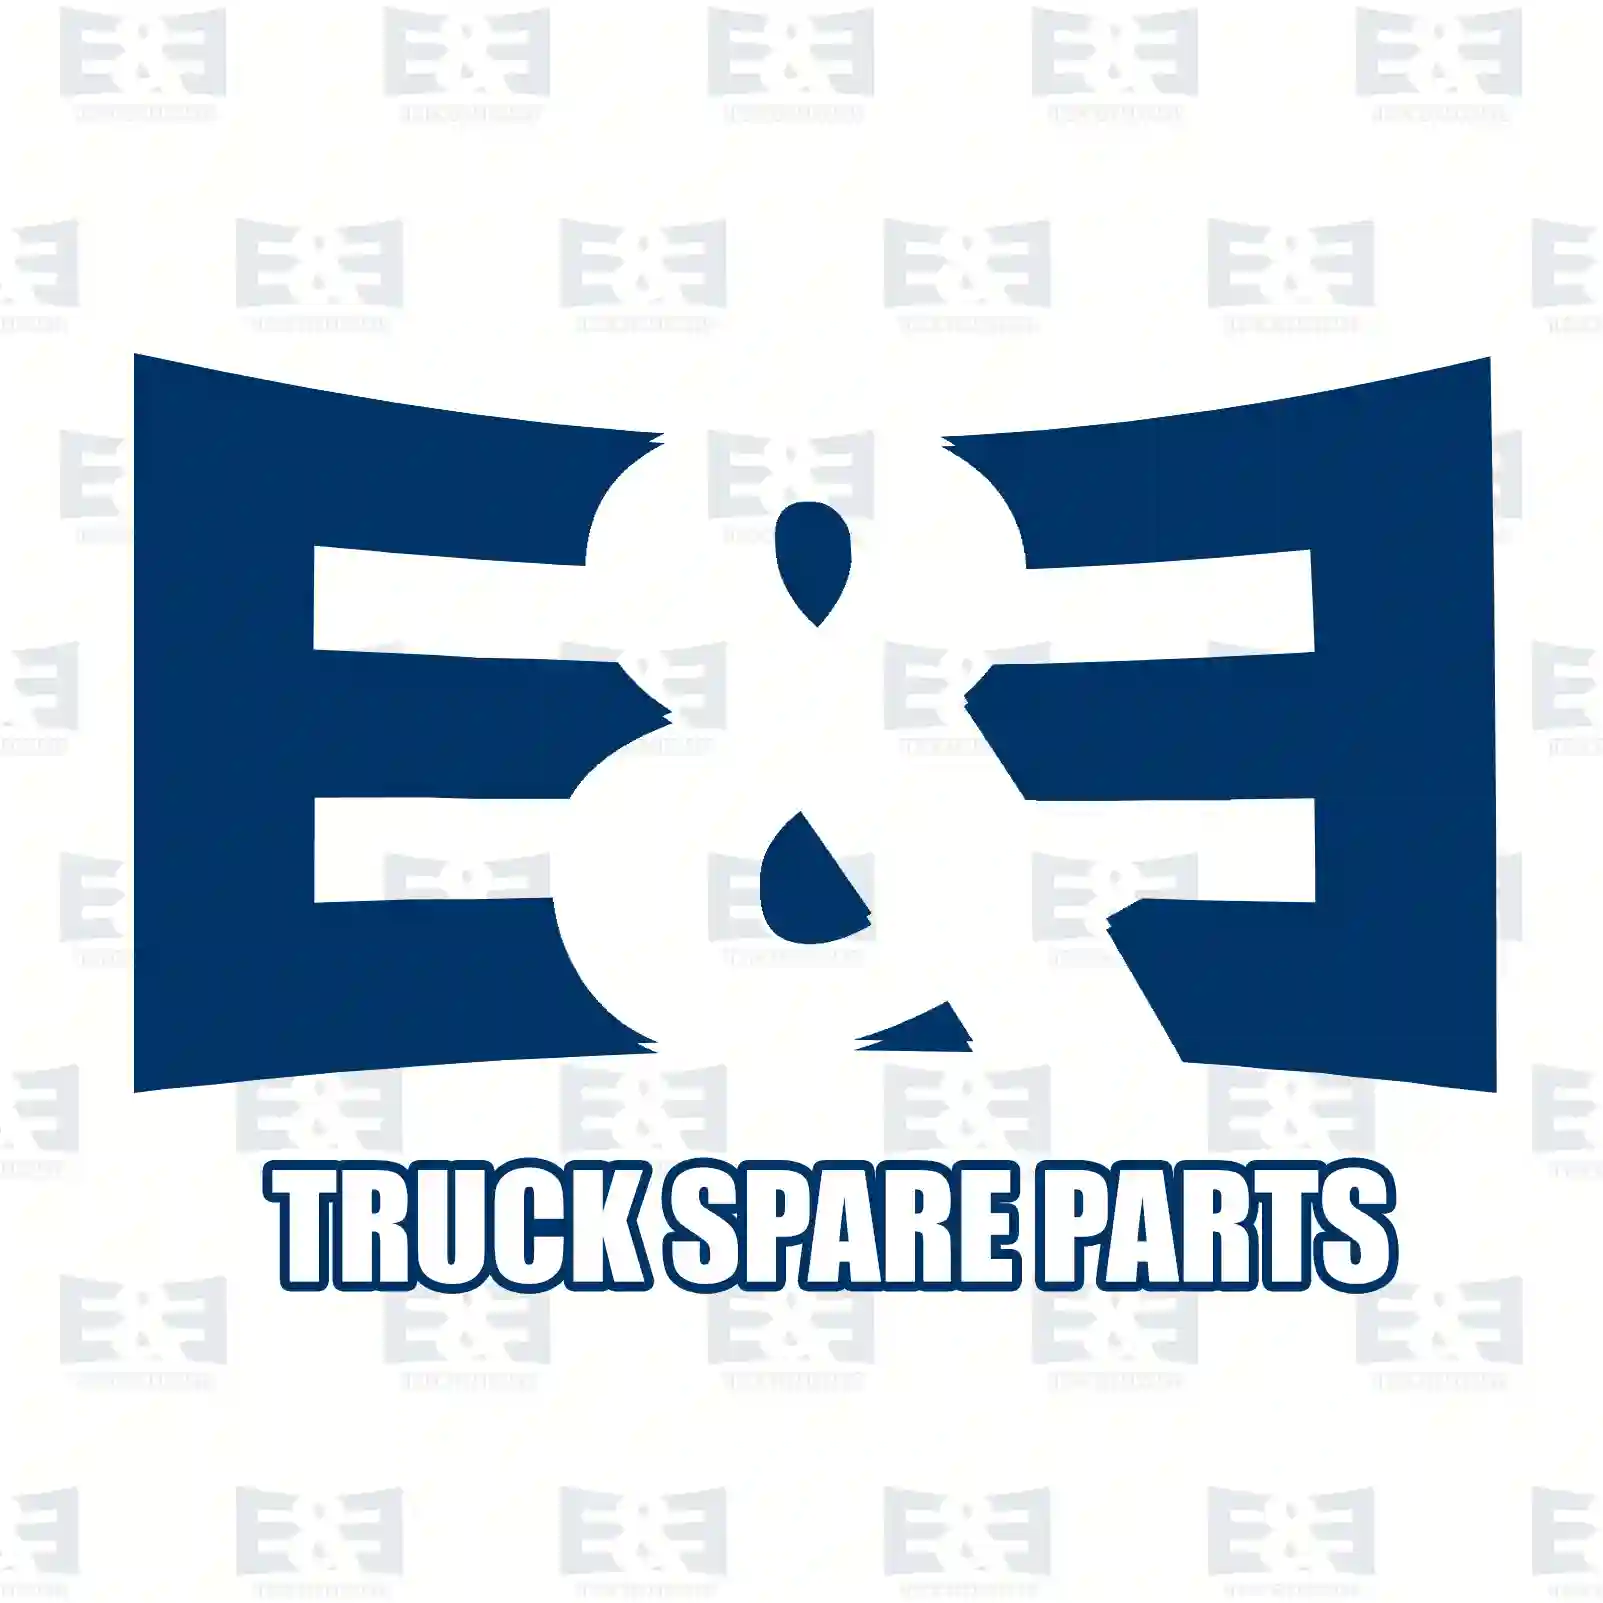 Step well case, right, 2E2291989, 9736663601, 97366 ||  2E2291989 E&E Truck Spare Parts | Truck Spare Parts, Auotomotive Spare Parts Step well case, right, 2E2291989, 9736663601, 97366 ||  2E2291989 E&E Truck Spare Parts | Truck Spare Parts, Auotomotive Spare Parts